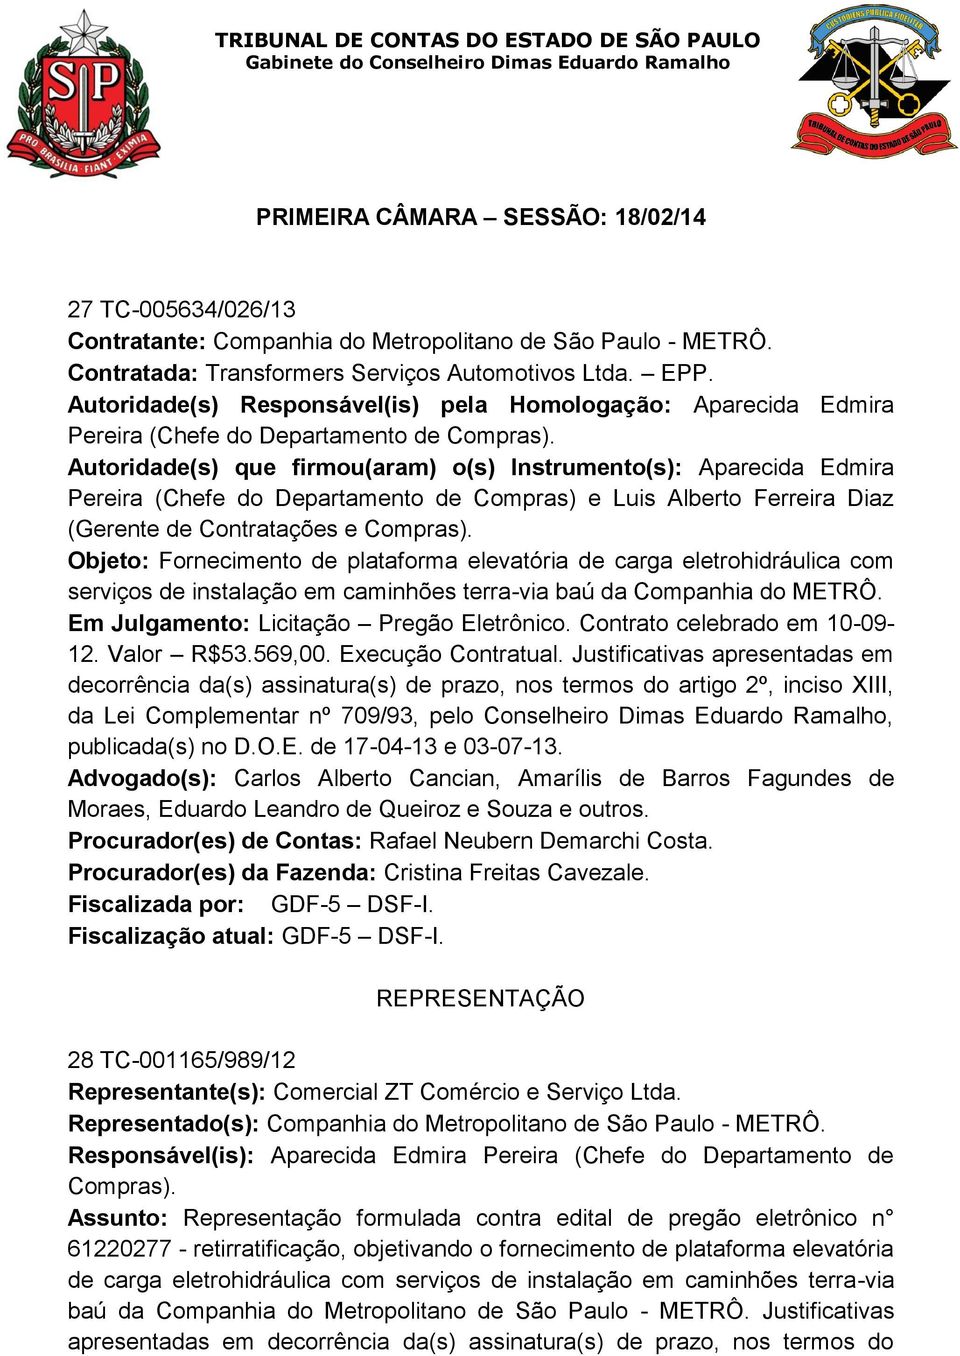 Autoridade(s) que firmou(aram) o(s) Instrumento(s): Aparecida Edmira Pereira (Chefe do Departamento de Compras) e Luis Alberto Ferreira Diaz (Gerente de Contratações e Compras).